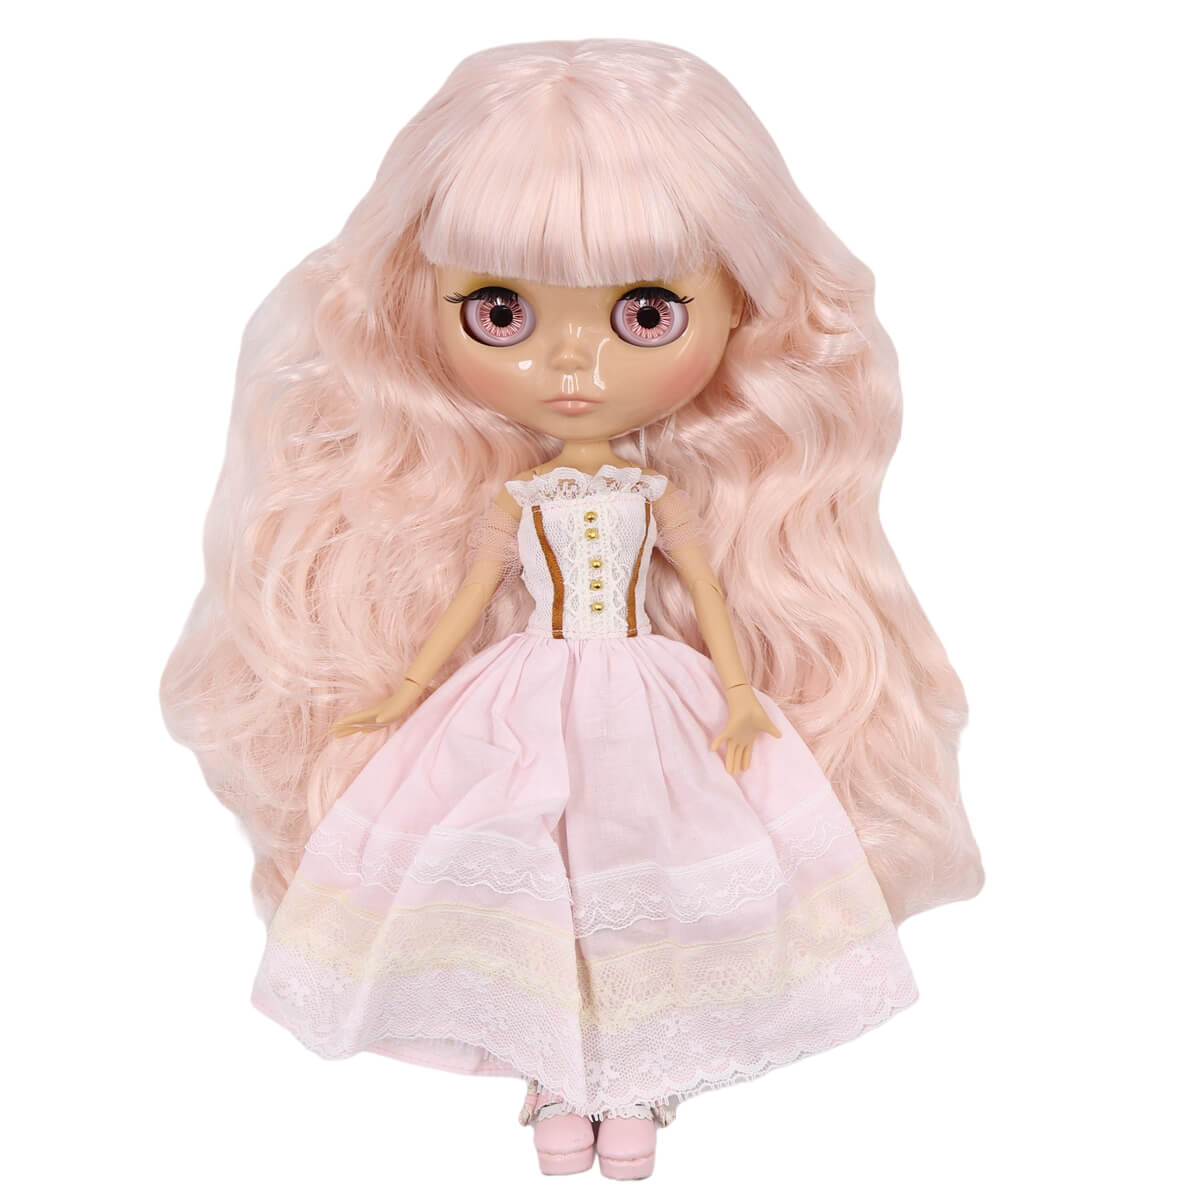 Hopp - Premium Custom Blythe Docka med lugnt ansikte rosa hår Custom Blythe Docka glänsande ansikte Custom Blythe Doll Tan Skin Custom Blythe Docka